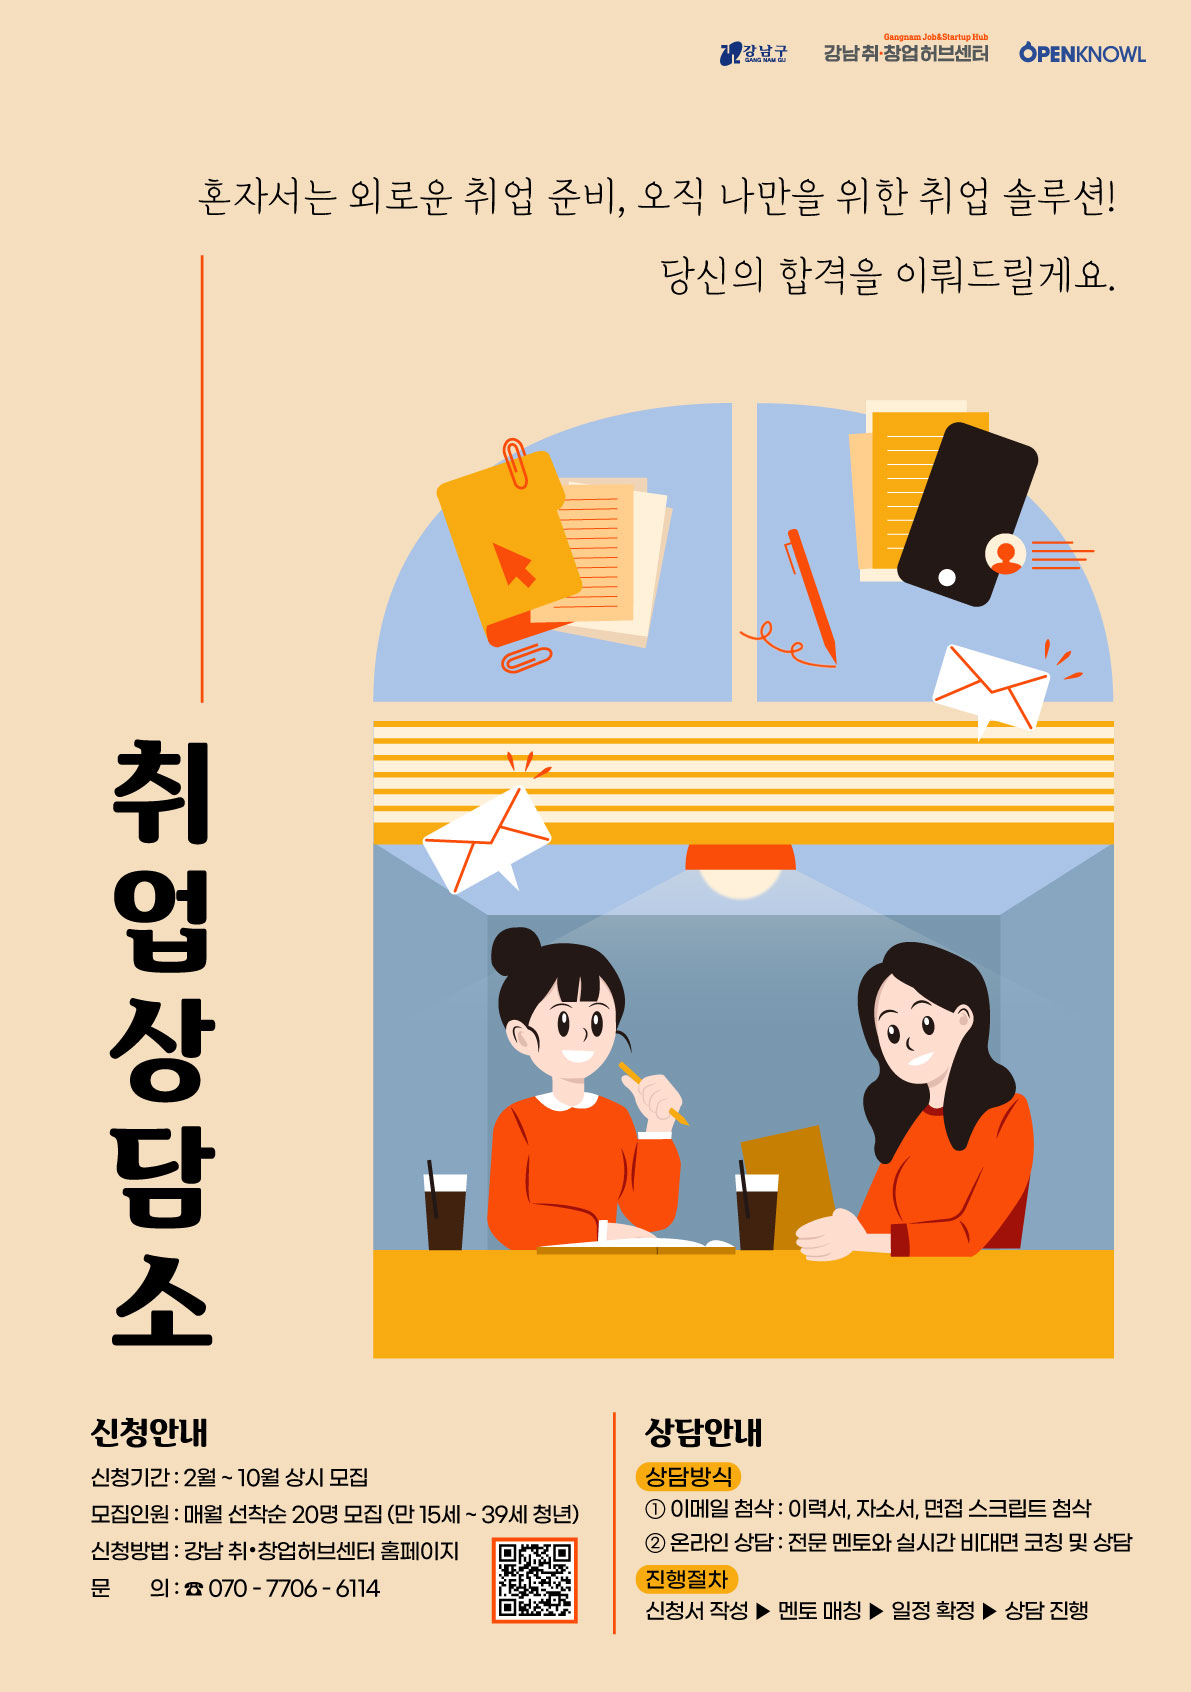 [강남 취•창업허브센터] 취업상담소 참여자 모집